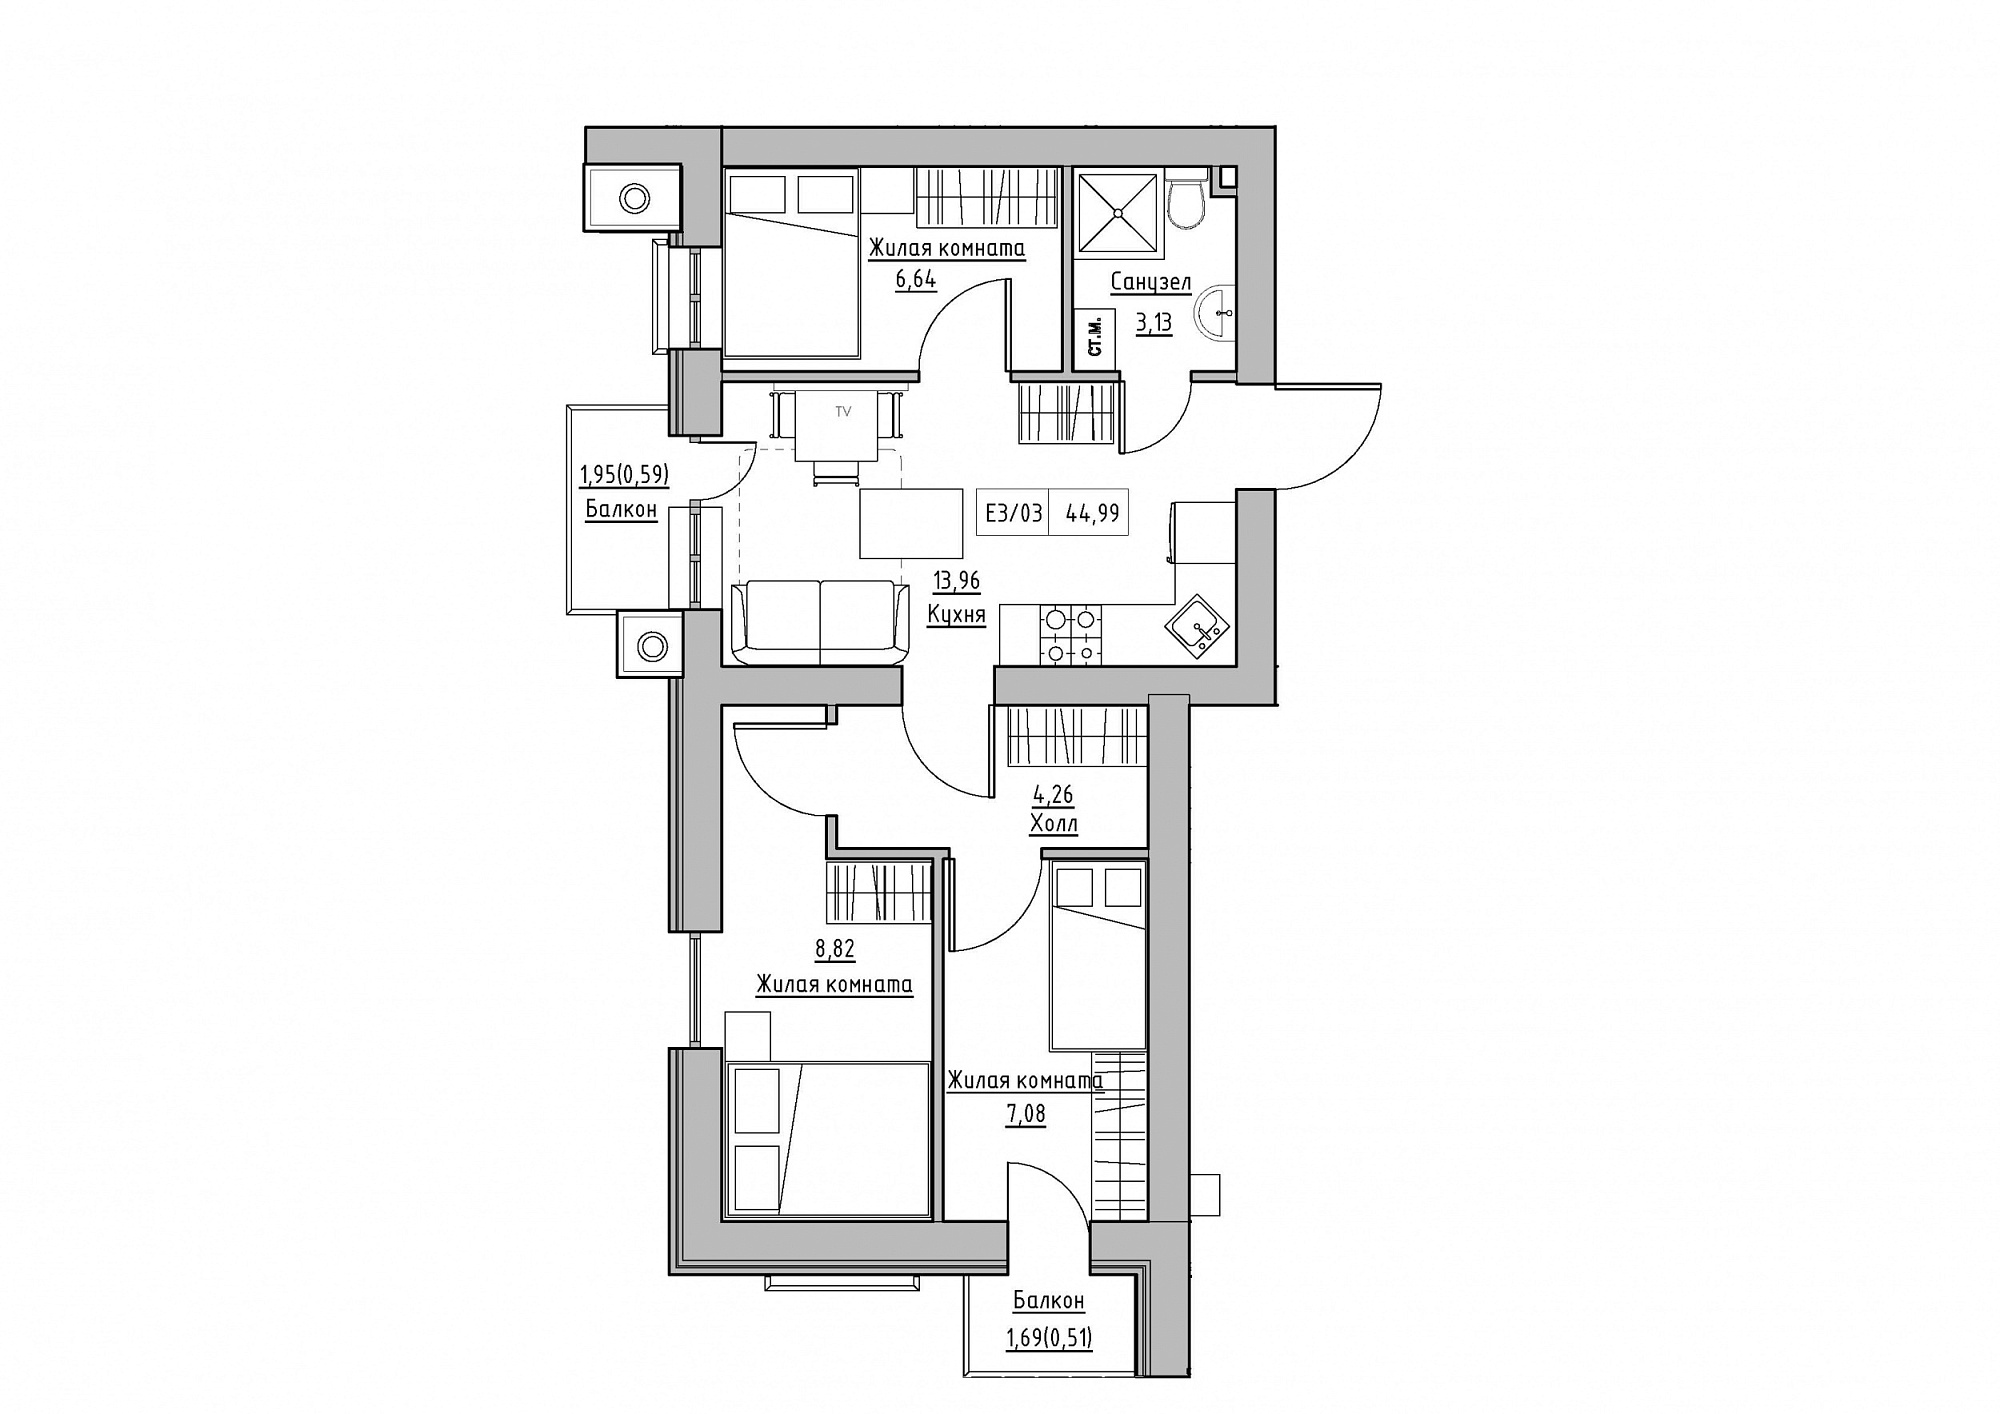 Планування 3-к квартира площею 44.99м2, KS-012-05/0011.